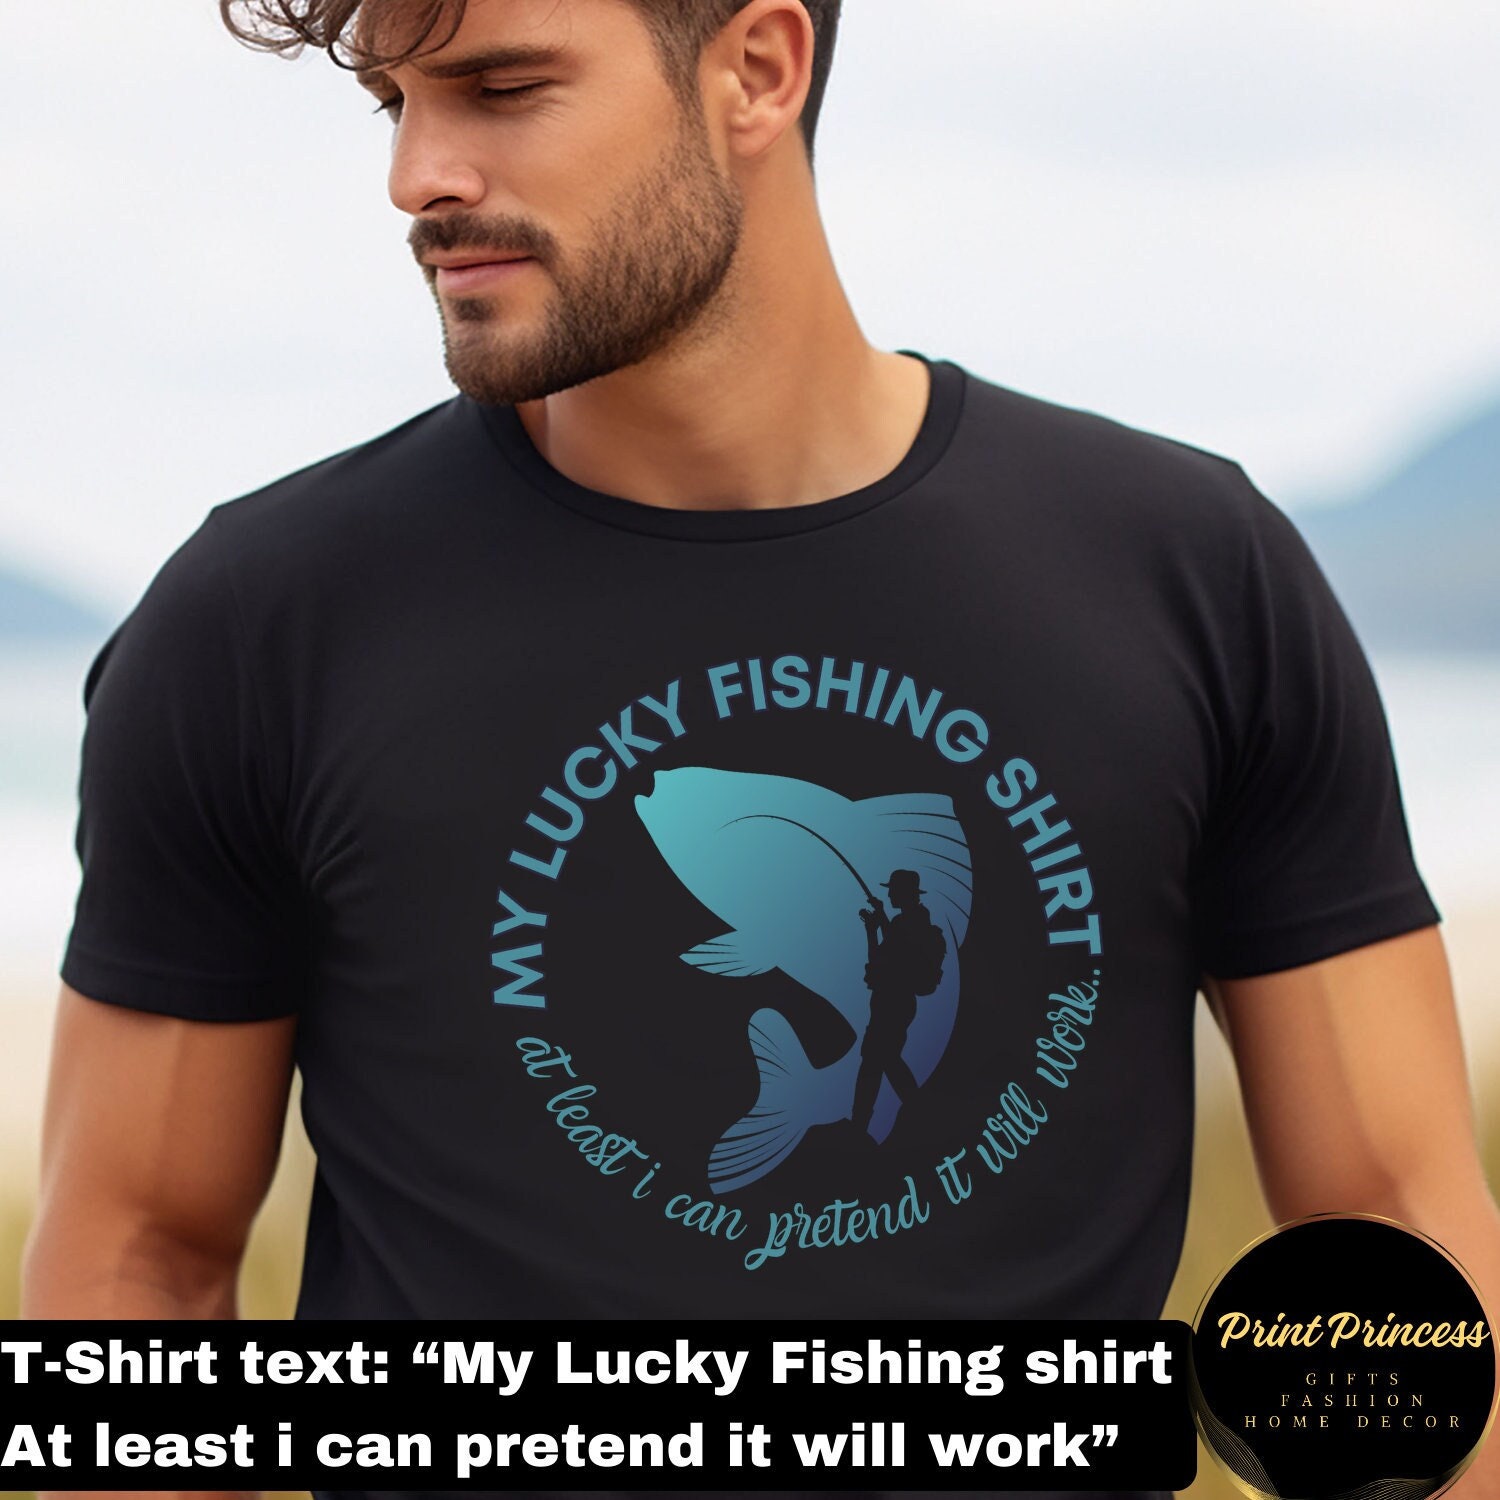 Lucky Fishing Shirt -  Canada